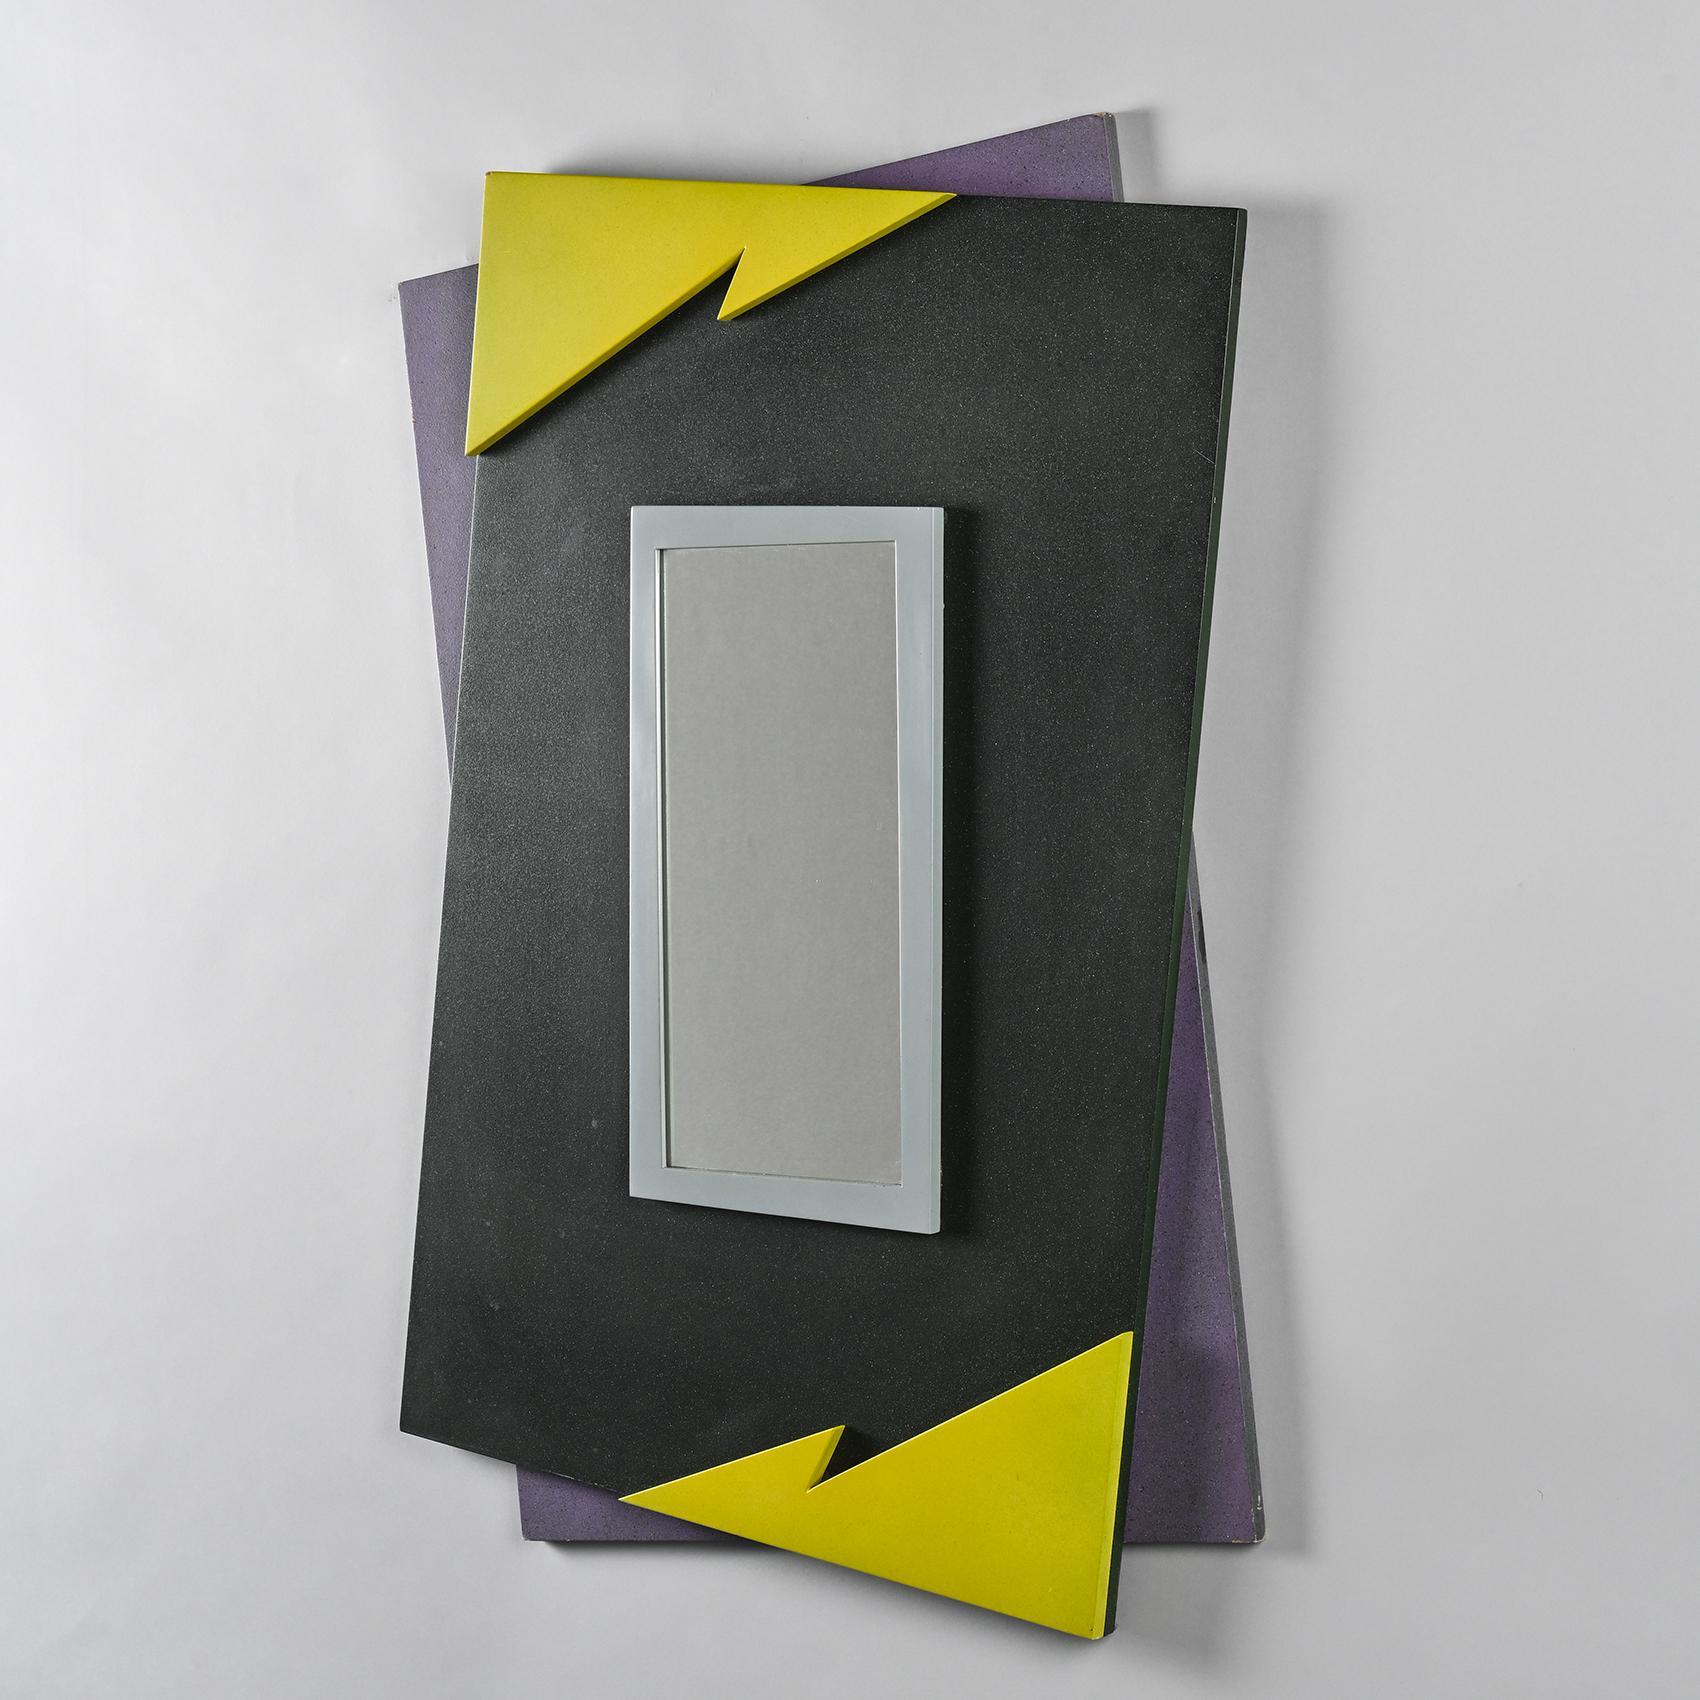 Ein Spiegel mit einem Rahmen aus laminierter Spanplatte in einem kühnen 80er-Jahre-Design mit schwarzen, gelben und schwarz-violett gesprenkelten Mustern.

Auf der Rückseite mit der Unterschrift von Mario Eichmann und dem Namen des Herausgebers